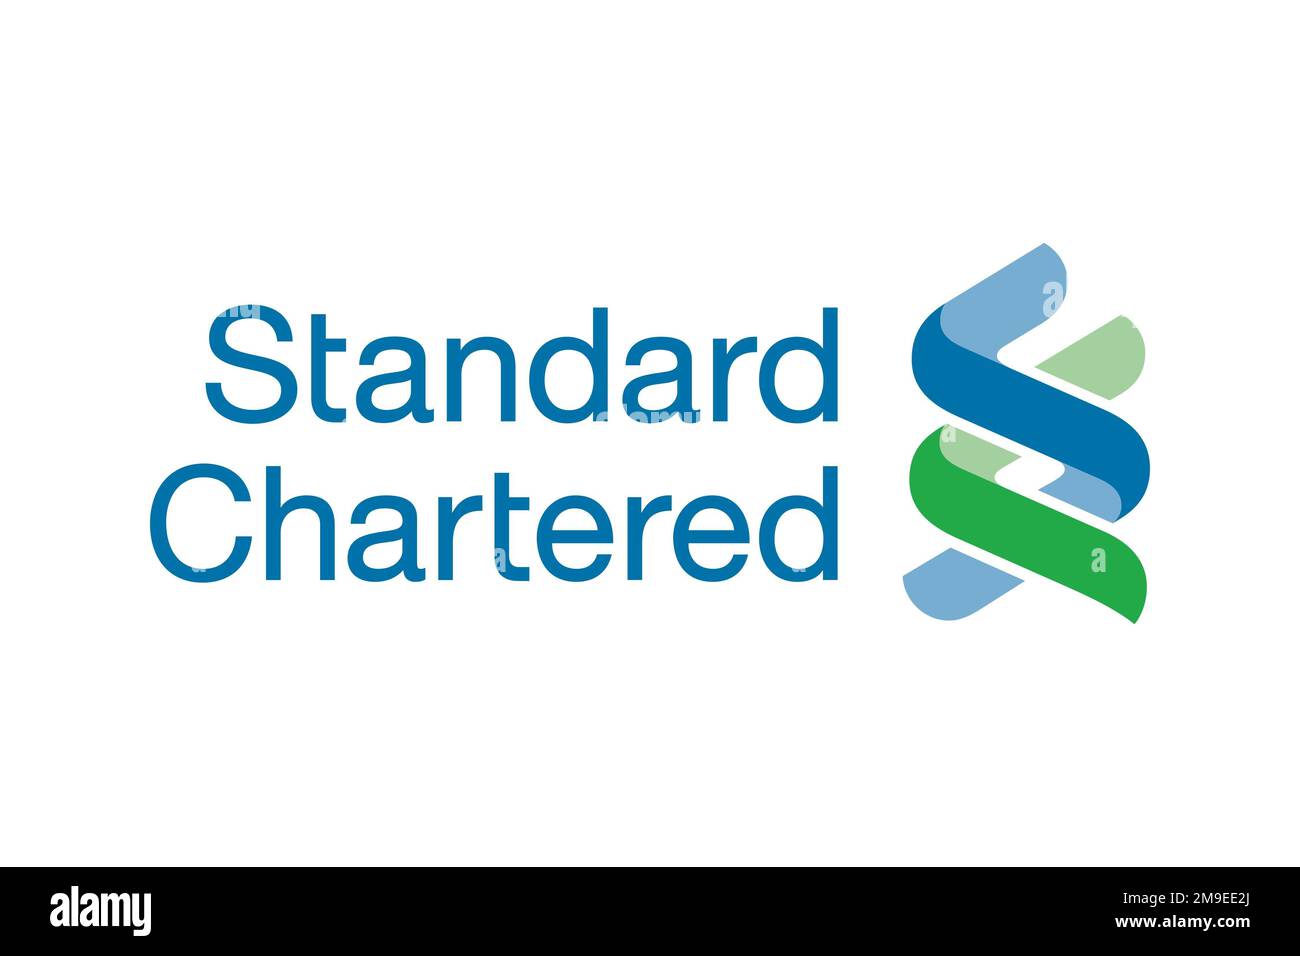 Standard con chartered, logo, sfondo bianco Foto Stock